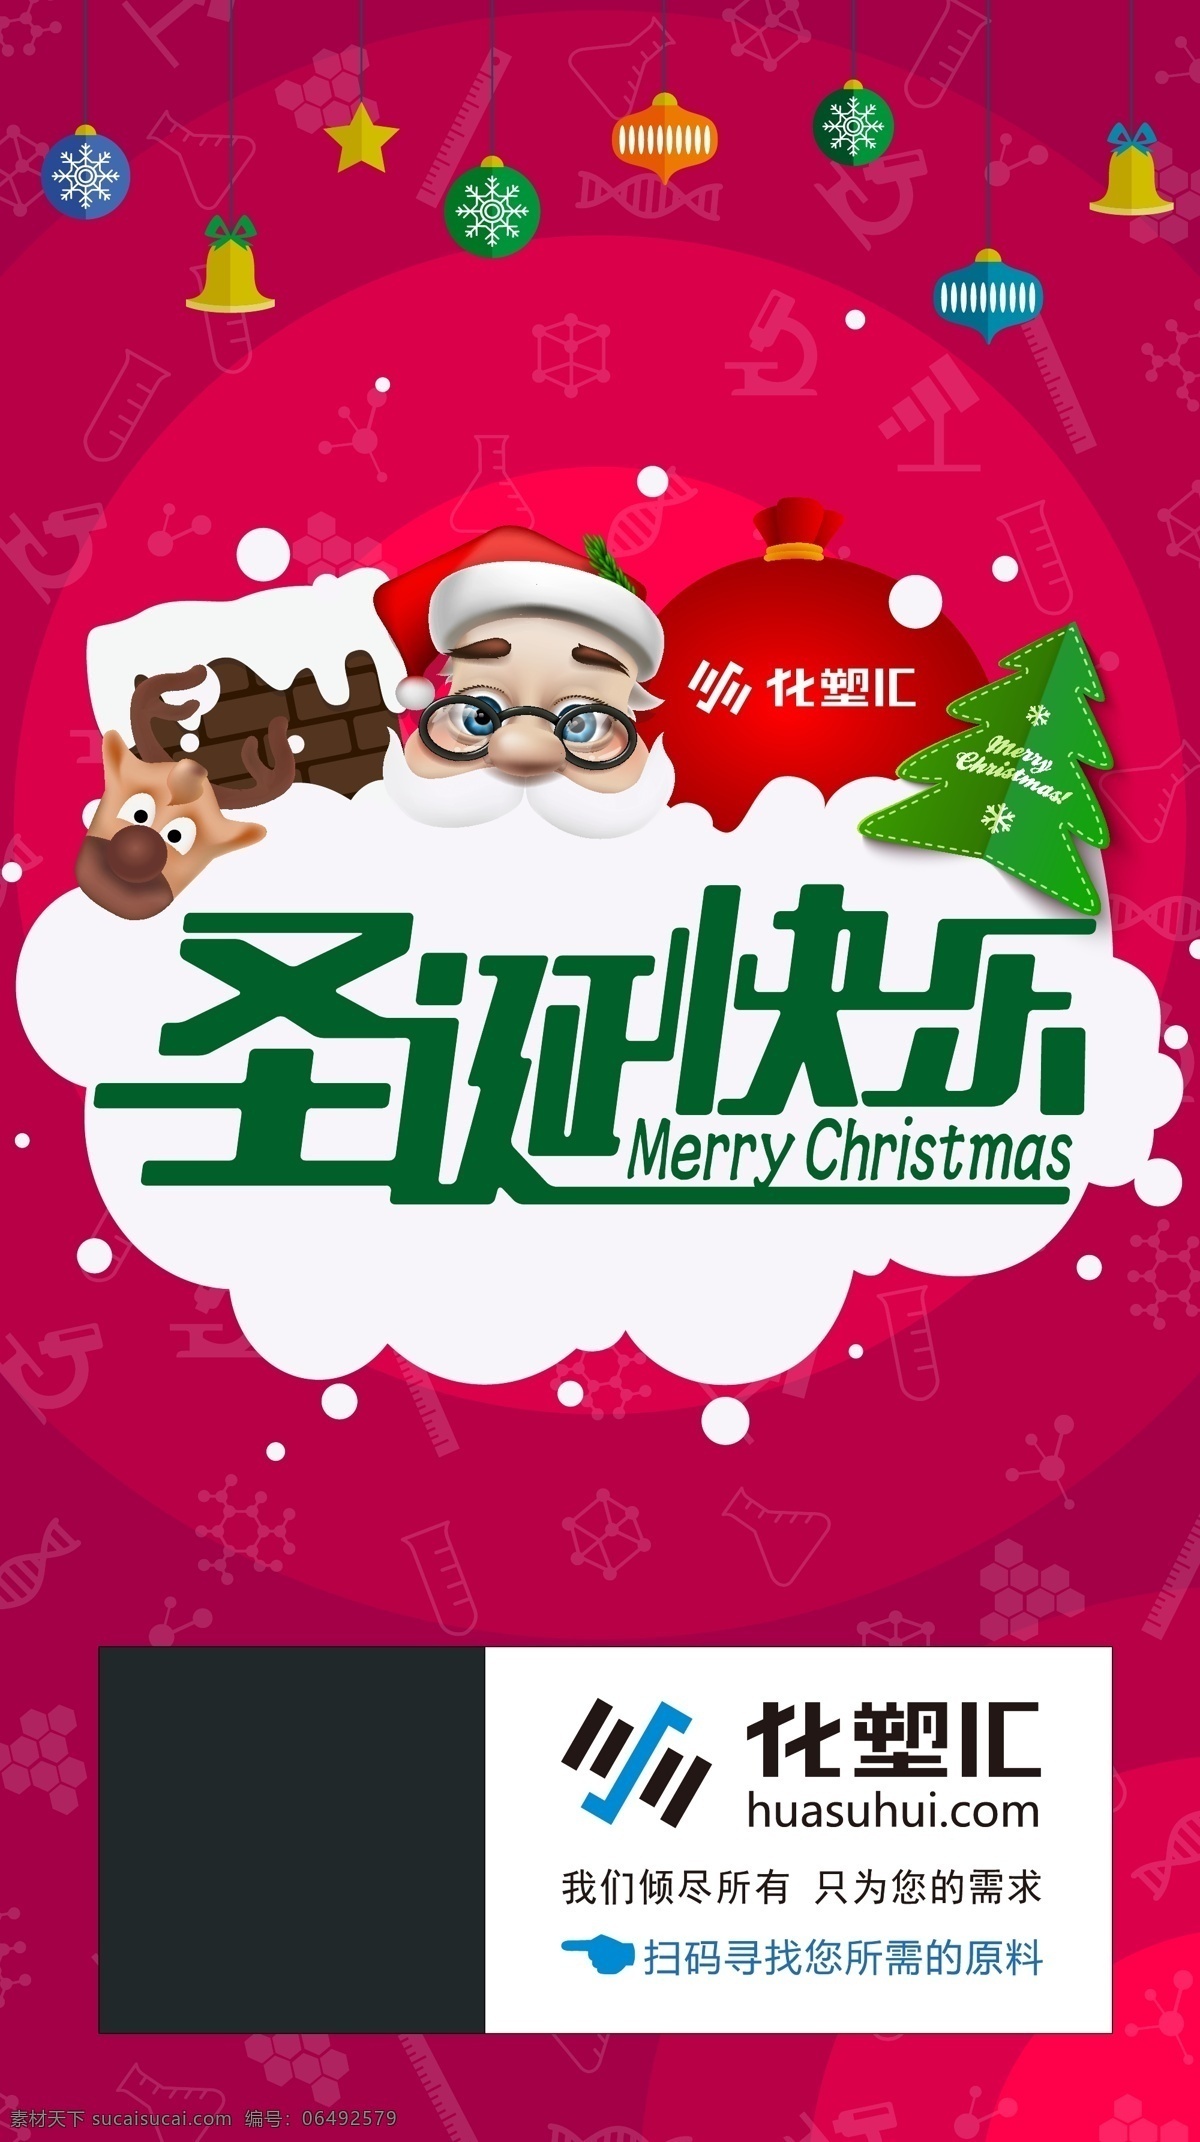 圣诞节 圣诞老人 圣诞快乐 圣诞雪橇 麋鹿 圣诞 微信宣传 微信图 圣诞海报 圣诞宣传 圣诞节海报 海报 节气热点